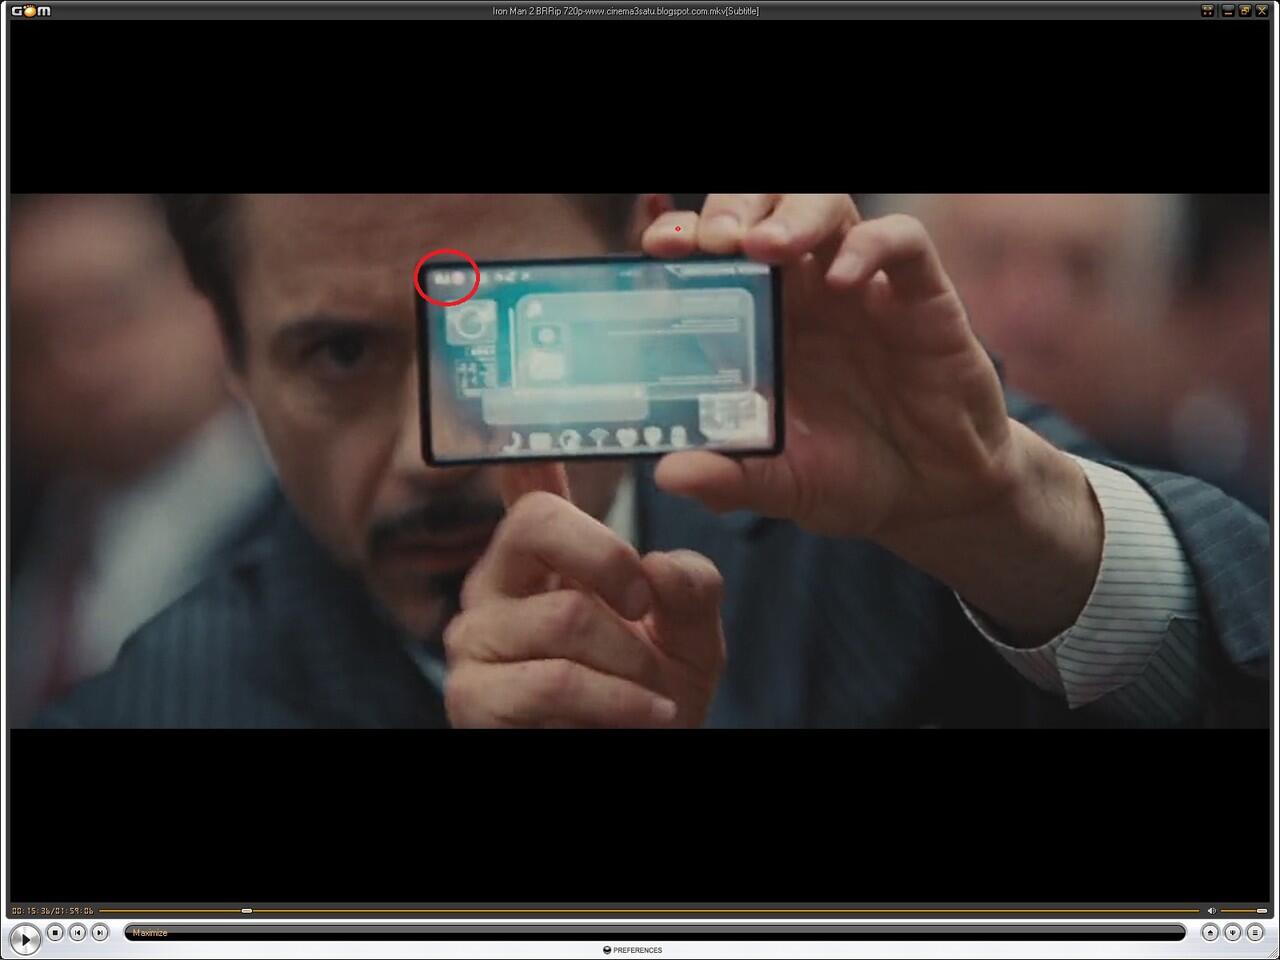 Ternyata Tony Stark menggunakan gadget merk LG gan..........